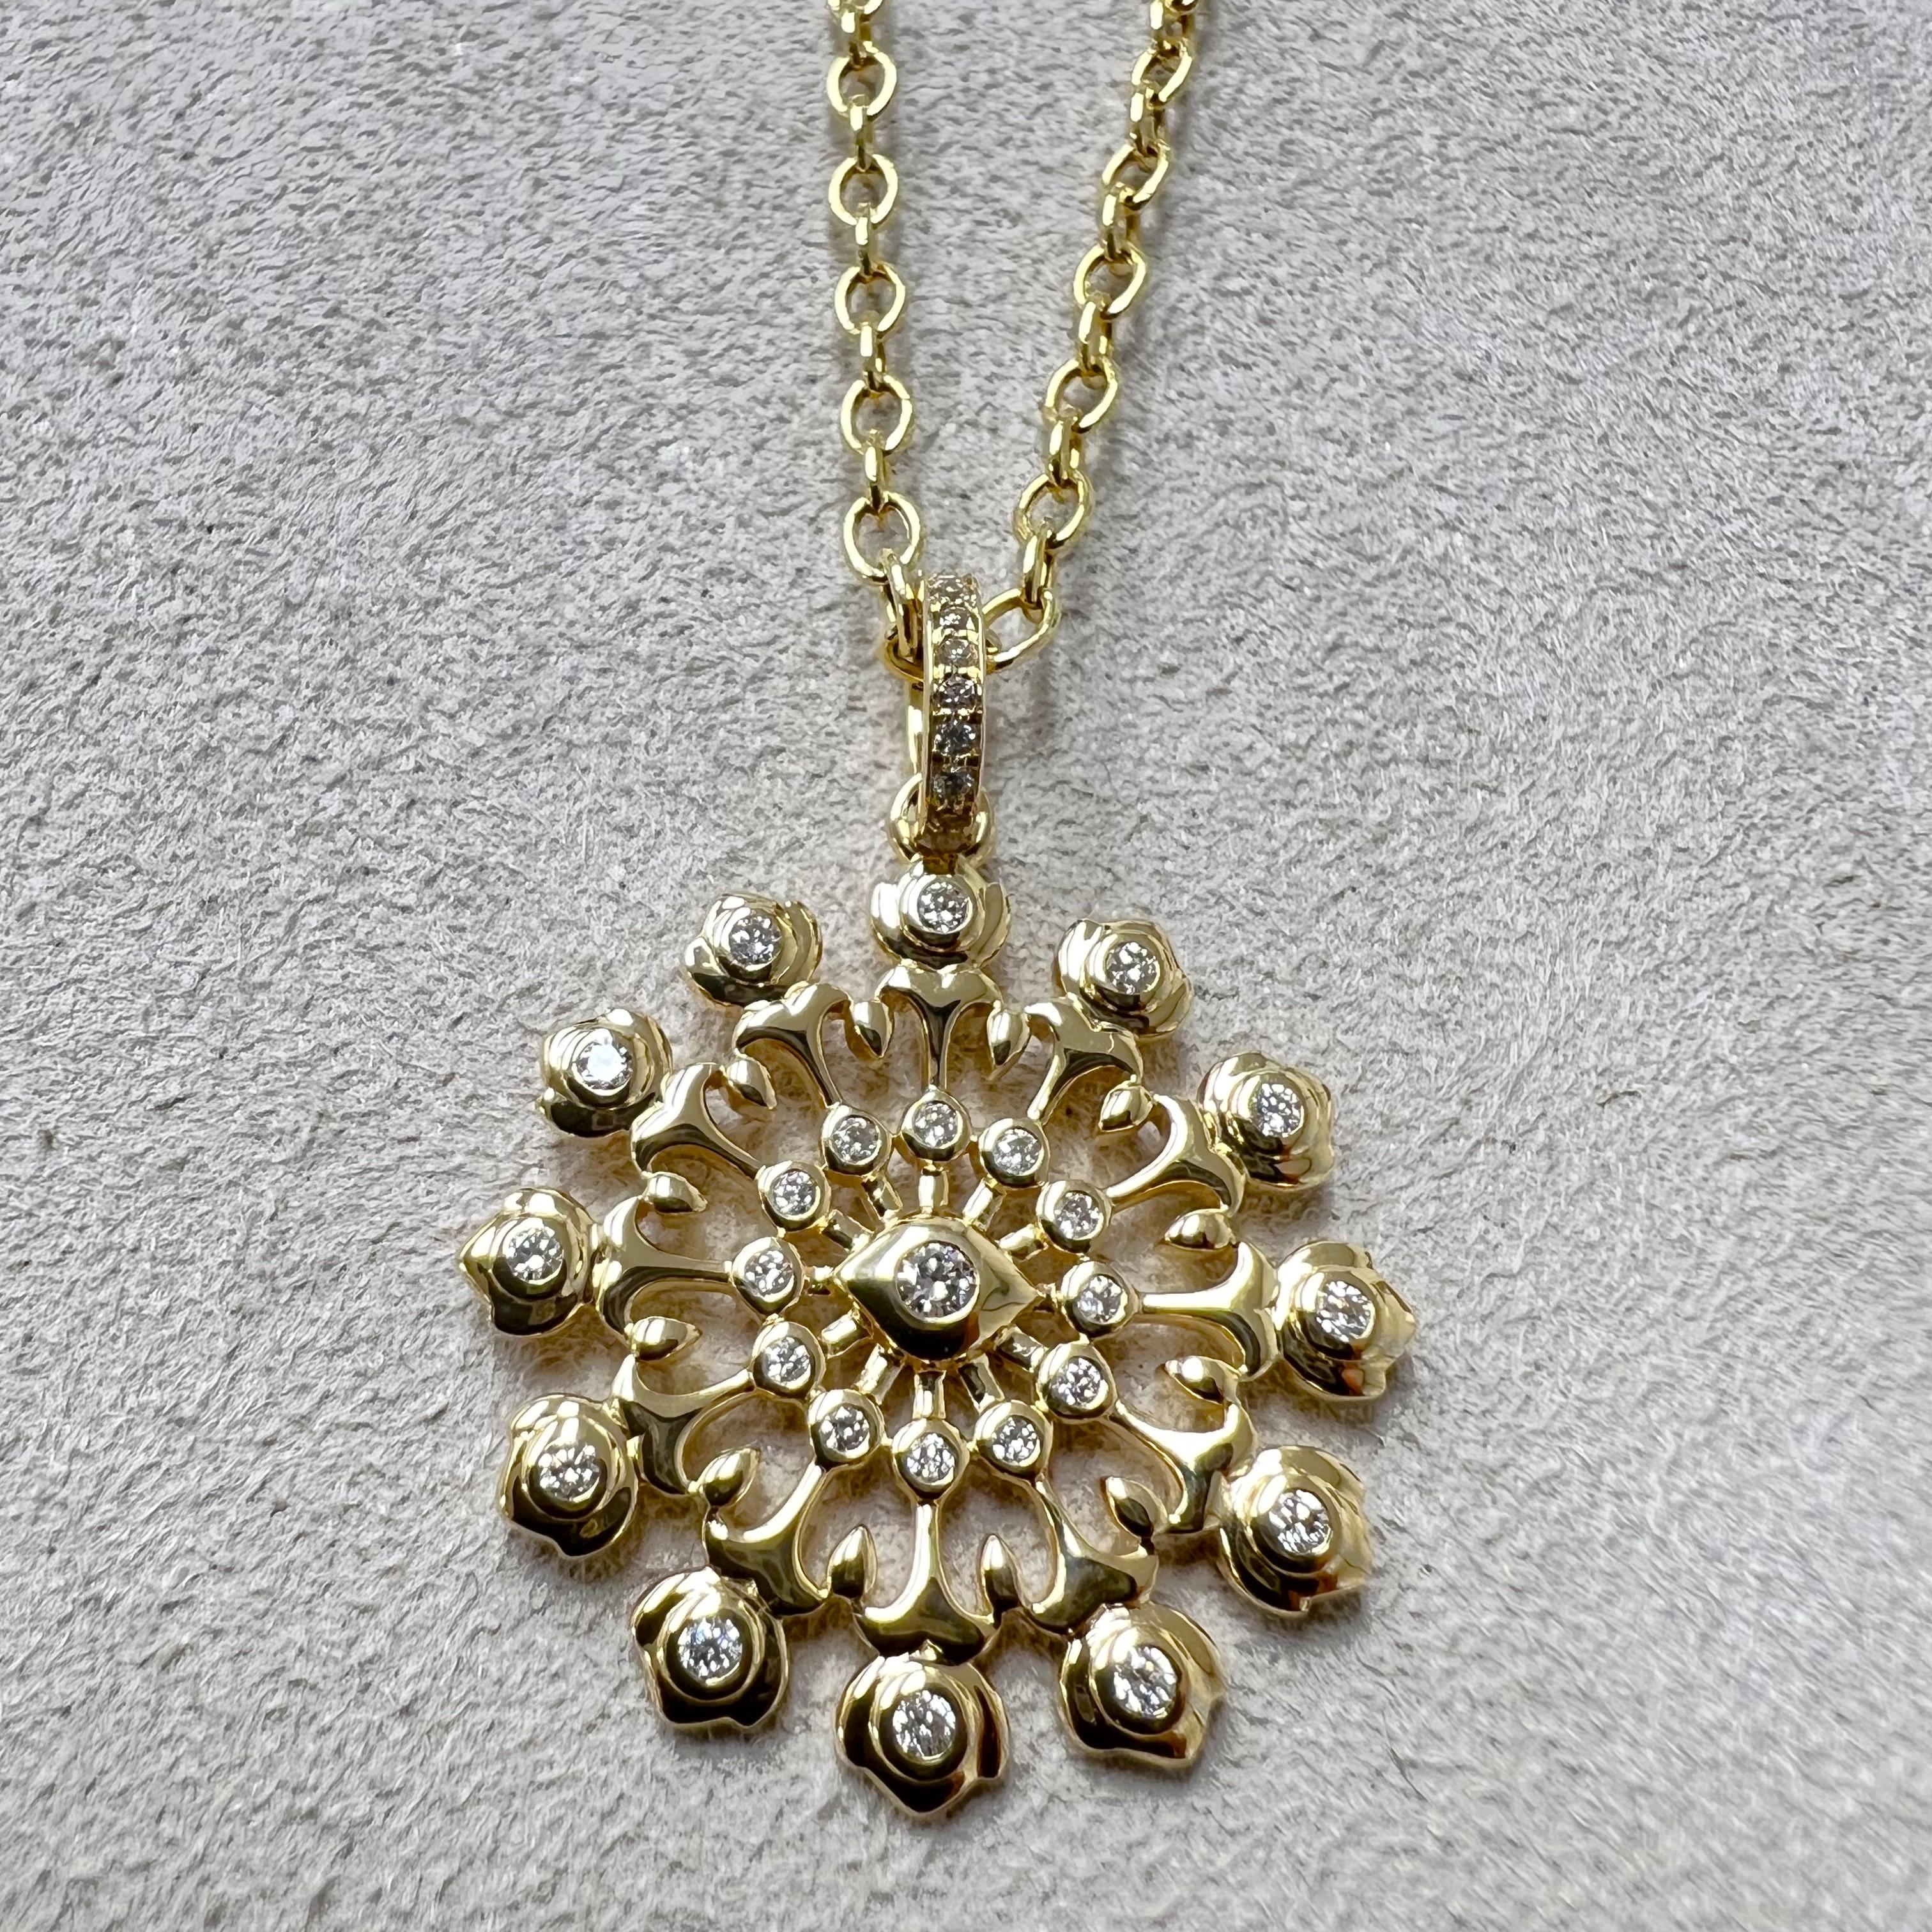 Créé en or jaune 18 carats
Diamants 0,40 carat environ
Chaîne vendue séparément


 À propos des concepteurs ~ Dharmesh & Namrata

S'inspirant de petites choses, Dharmesh & Namrata Kothari ont créé une collection extraordinaire et rafraîchissante de